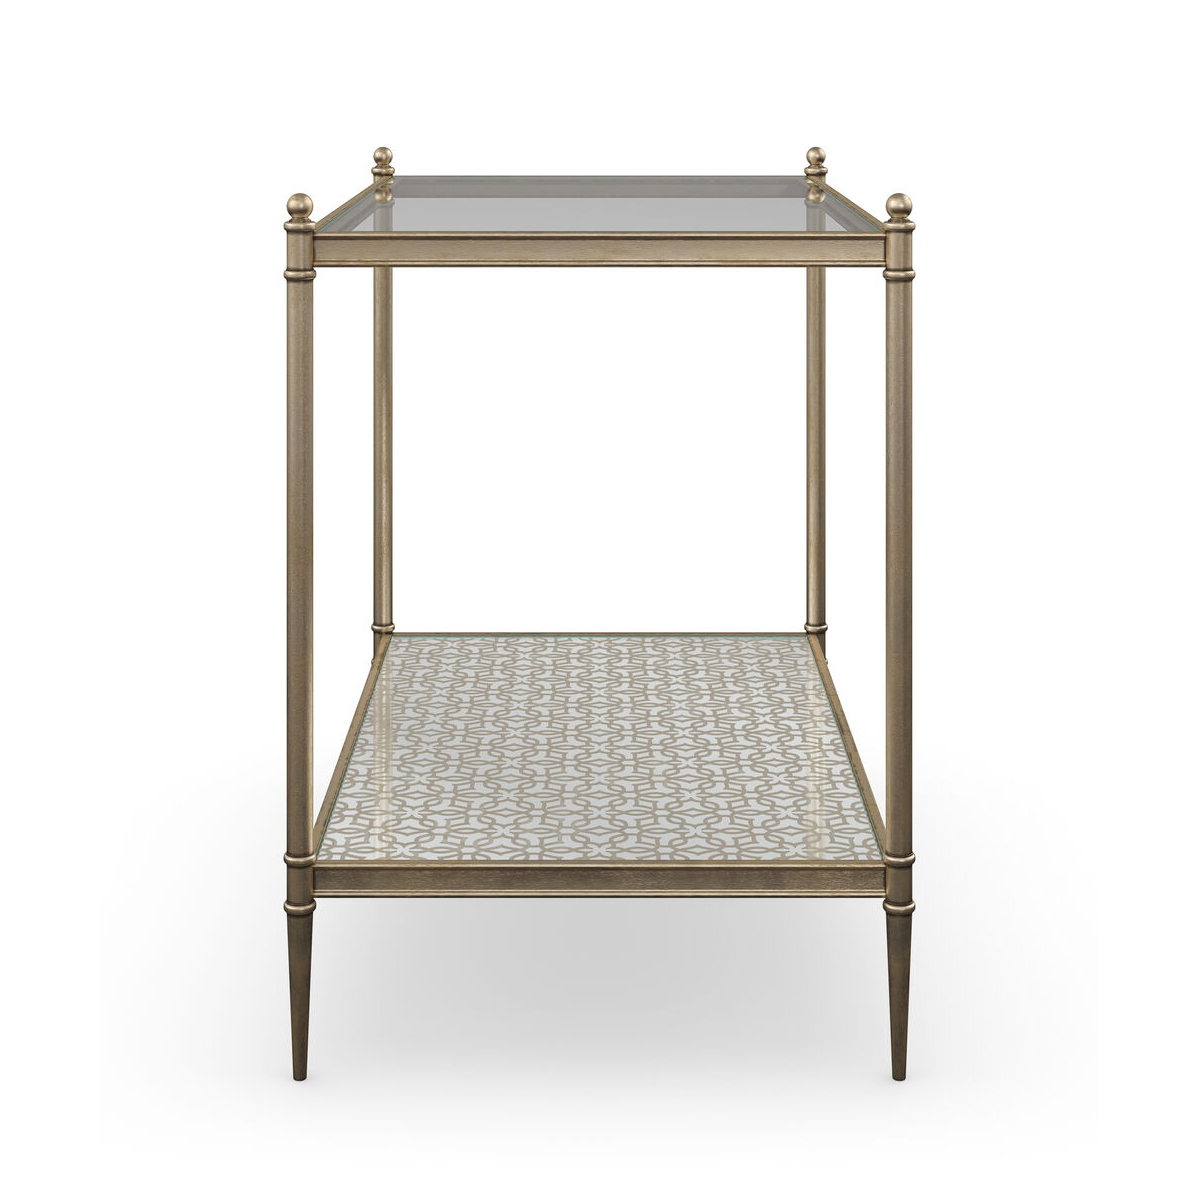 Изящный приставной столик Perfectly Adaptable от американского бренда Caracole